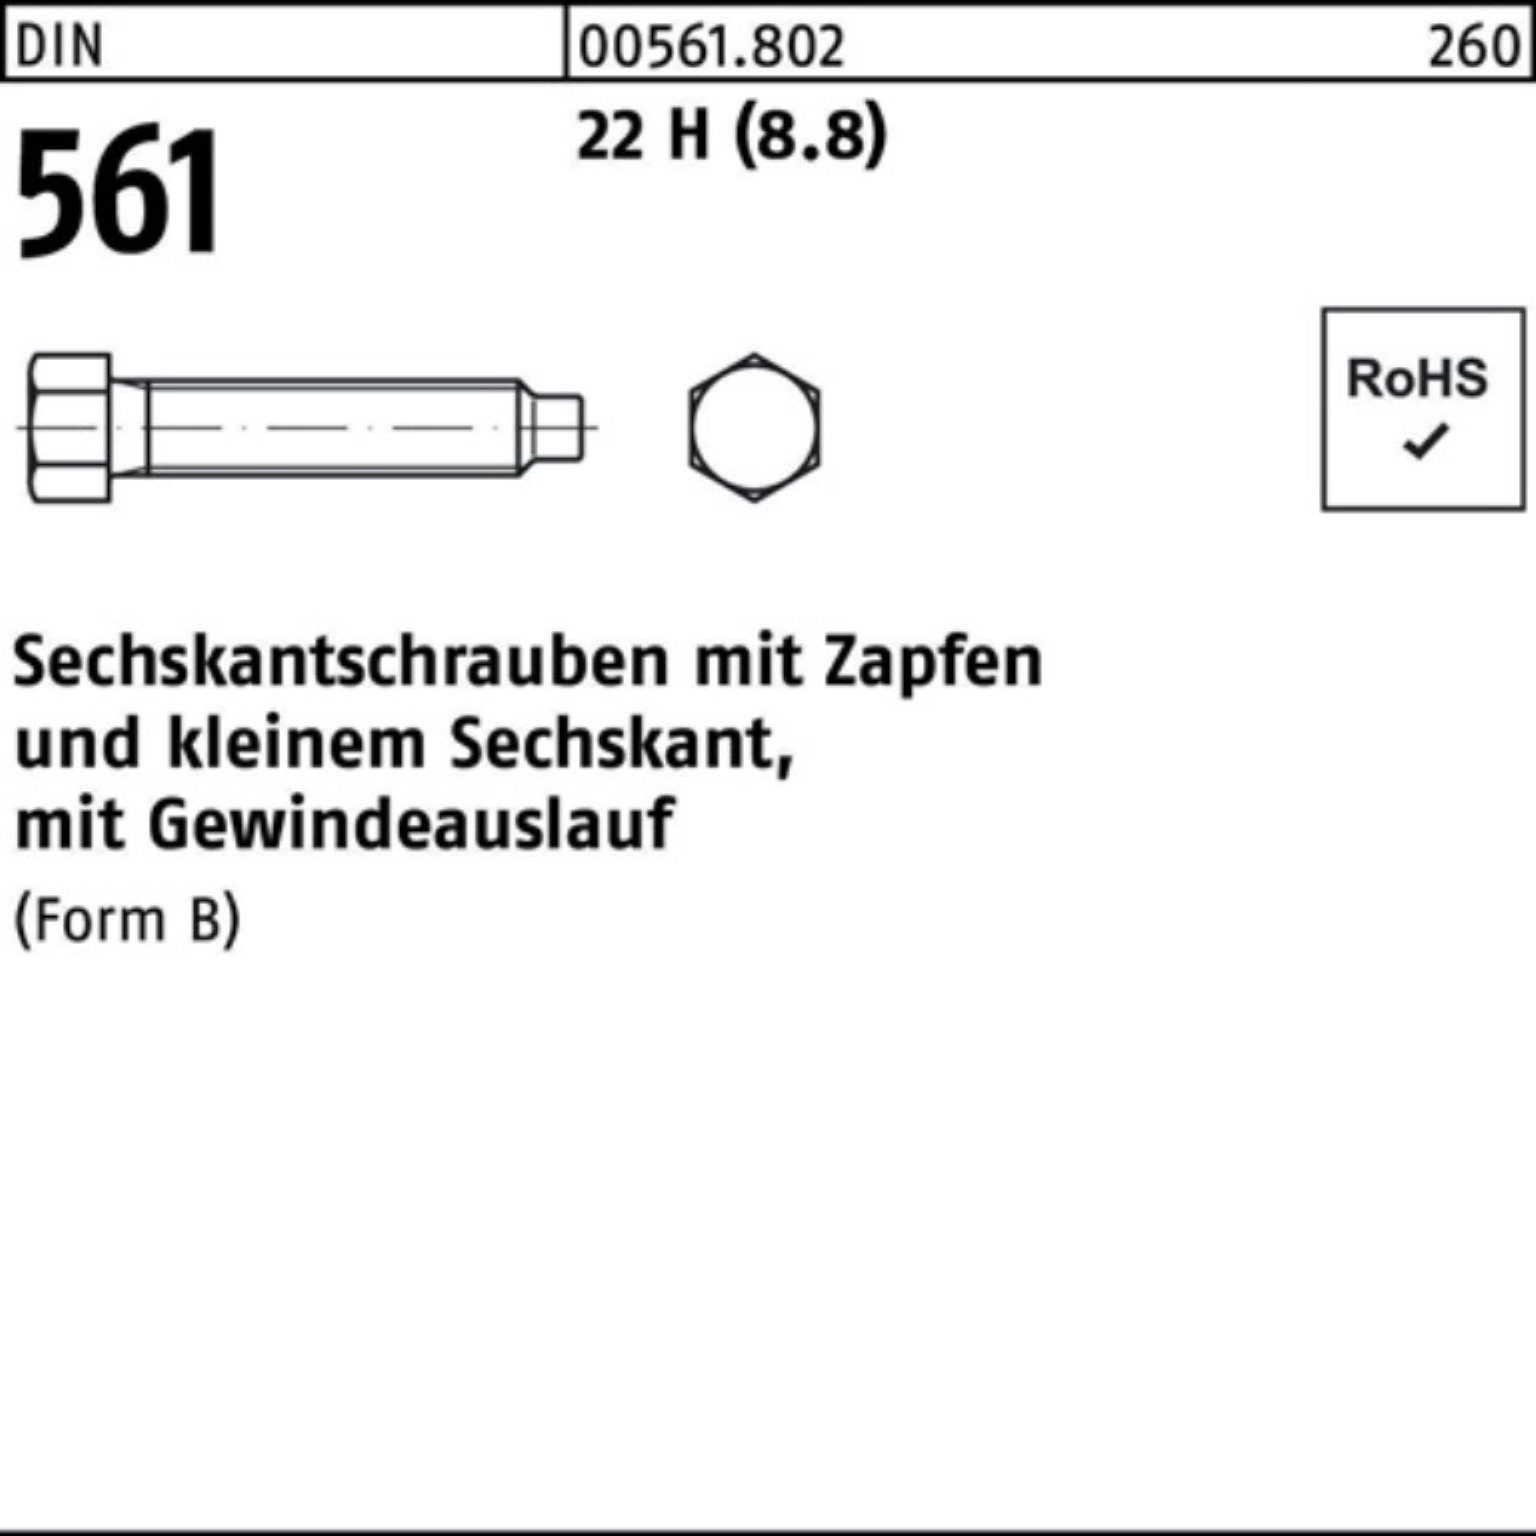 Reyher Sechskantschraube 100er Pack Sechskantschraube DIN 561 Zapfen BM 6x 12 22 H (8.8) 100 St